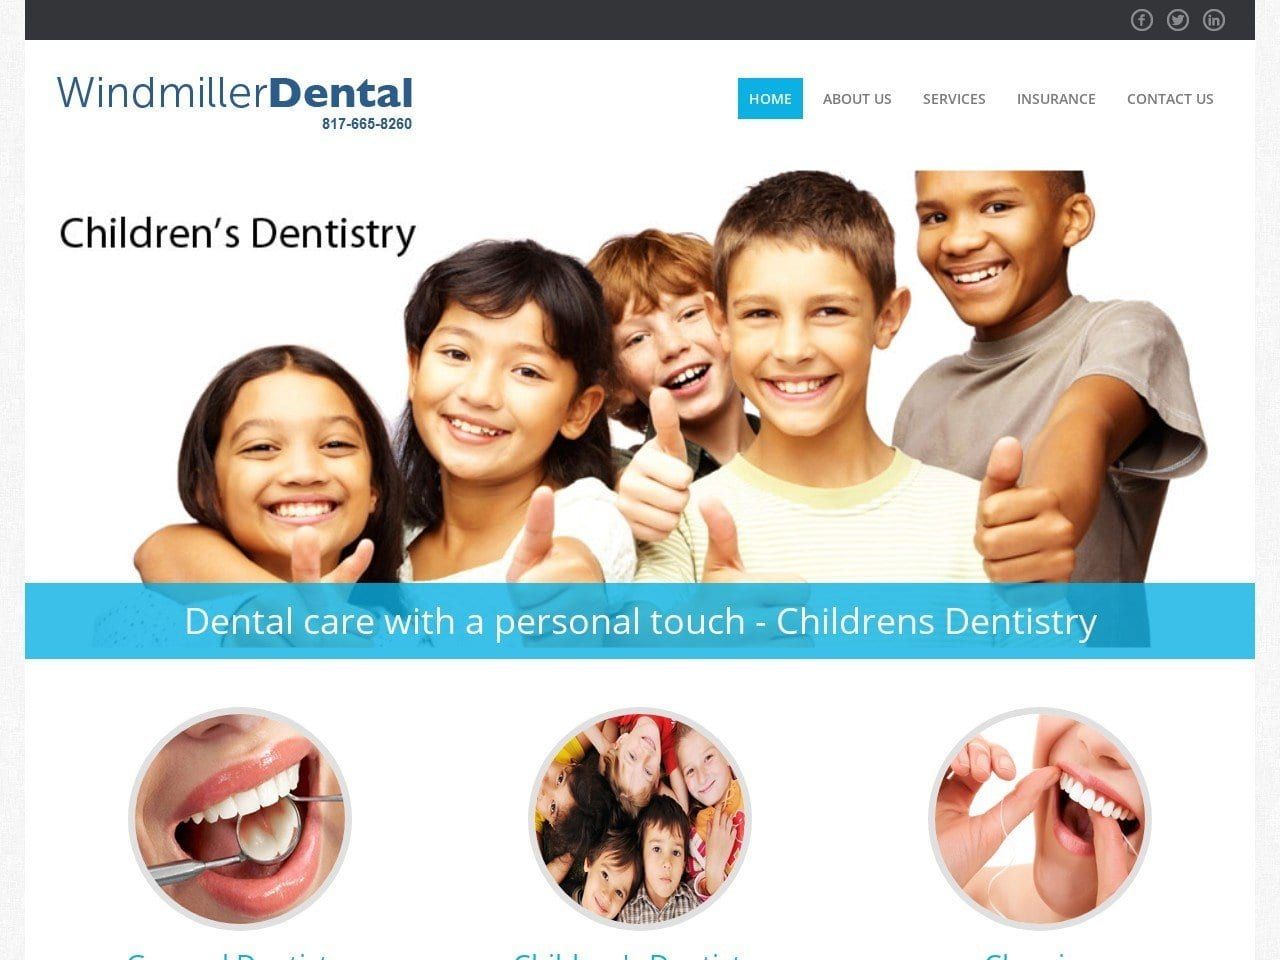 Windmiller Dental Website Screenshot from windmillerdental.com